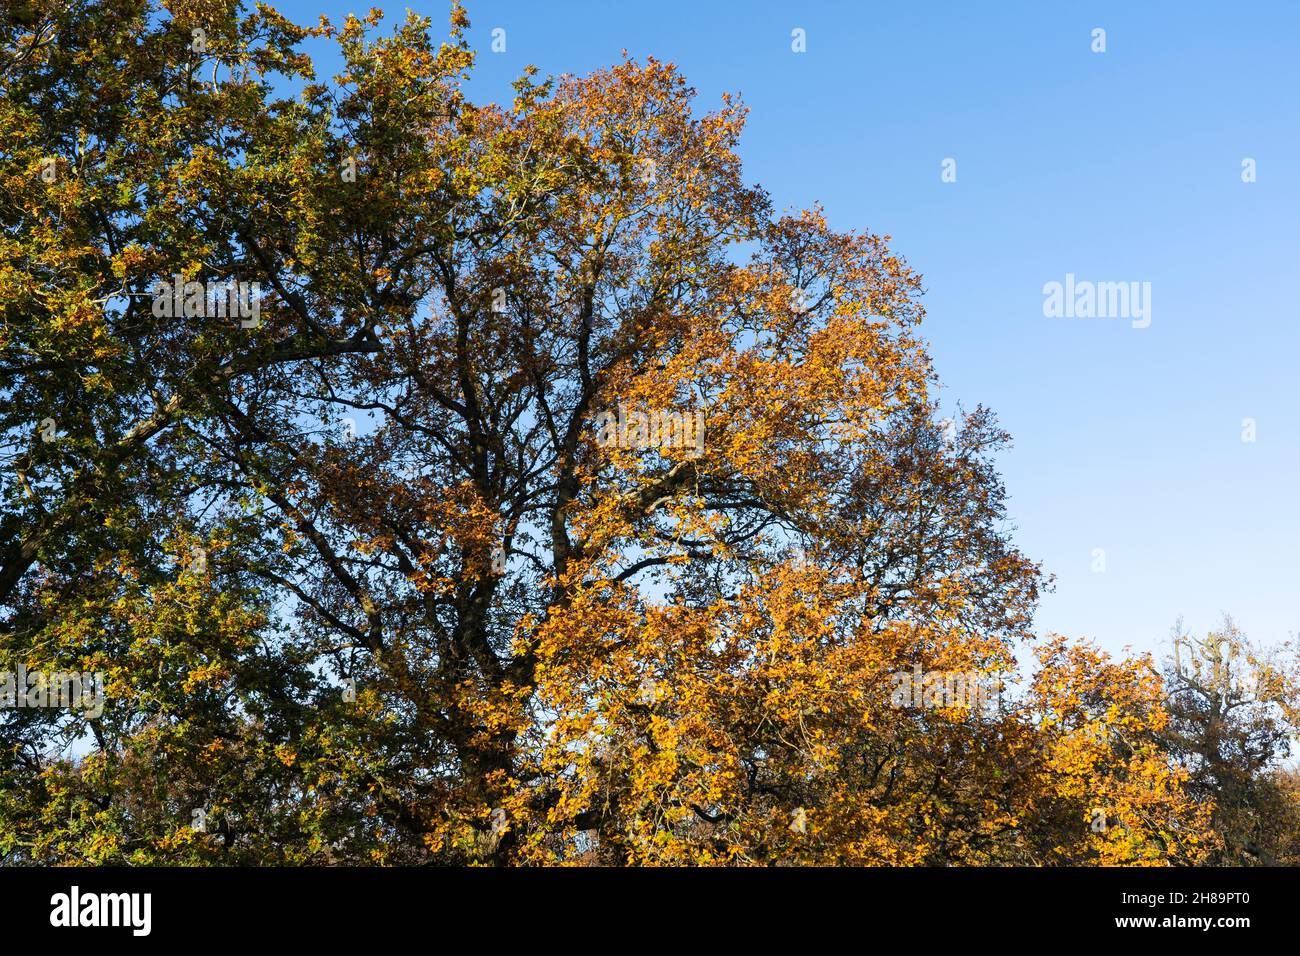 Die englische Eiche (gemeine oder Pedunculate Eiche - Quercus robur) mit goldgelben und orangen Blättern im Spätherbst / Herbst in Worcestershire, England Stockfoto